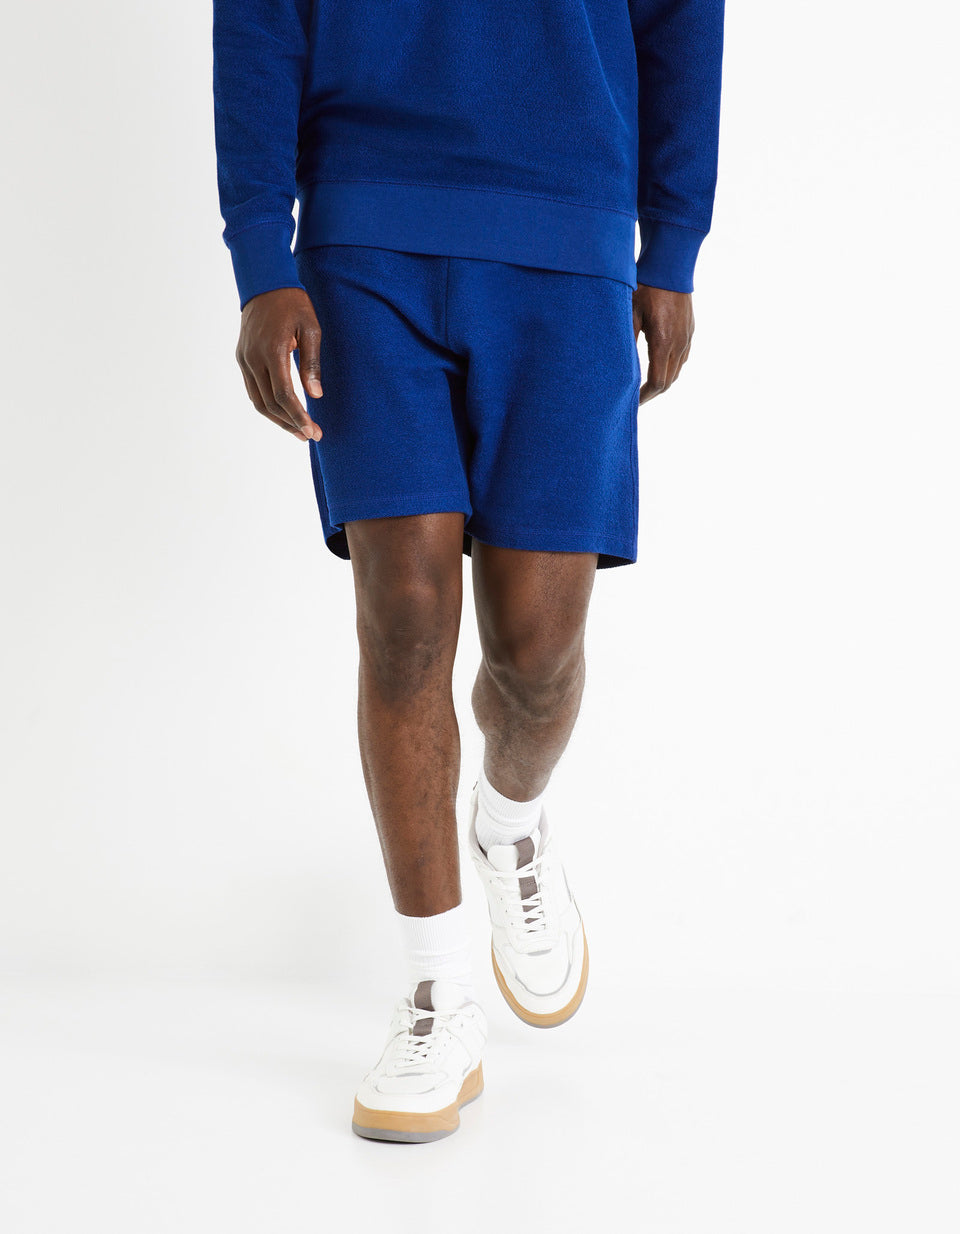 100% Cotton Shorts - Denim Blue - 02